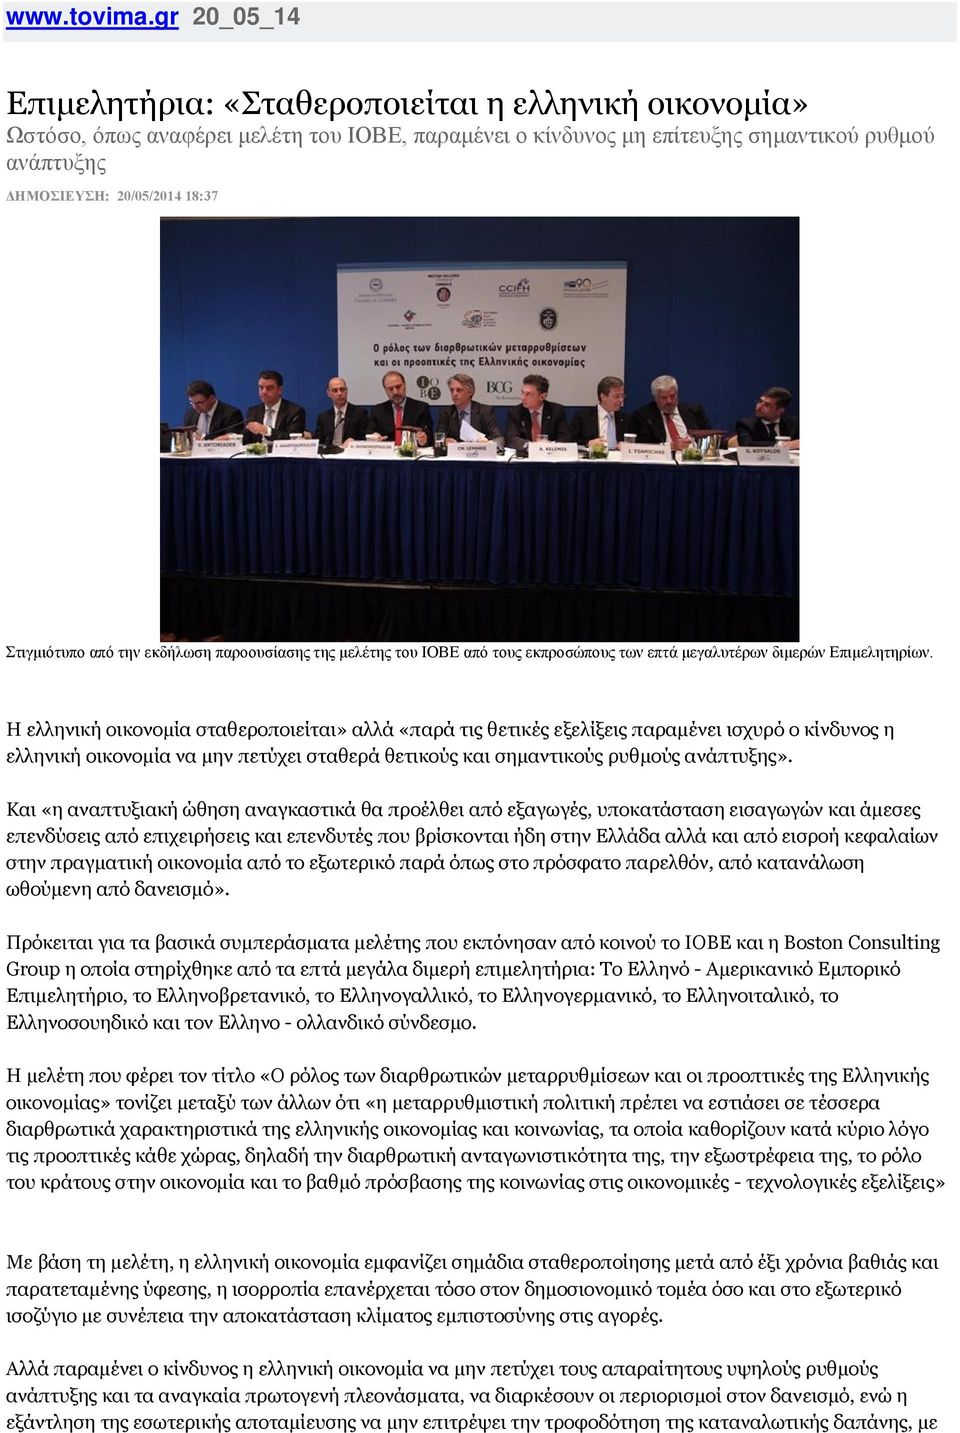 Στιγμιότυπο από την εκδήλωση παροουσίασης της μελέτης του ΙΟΒΕ από τους εκπροσώπους των επτά μεγαλυτέρων διμερών Επιμελητηρίων.